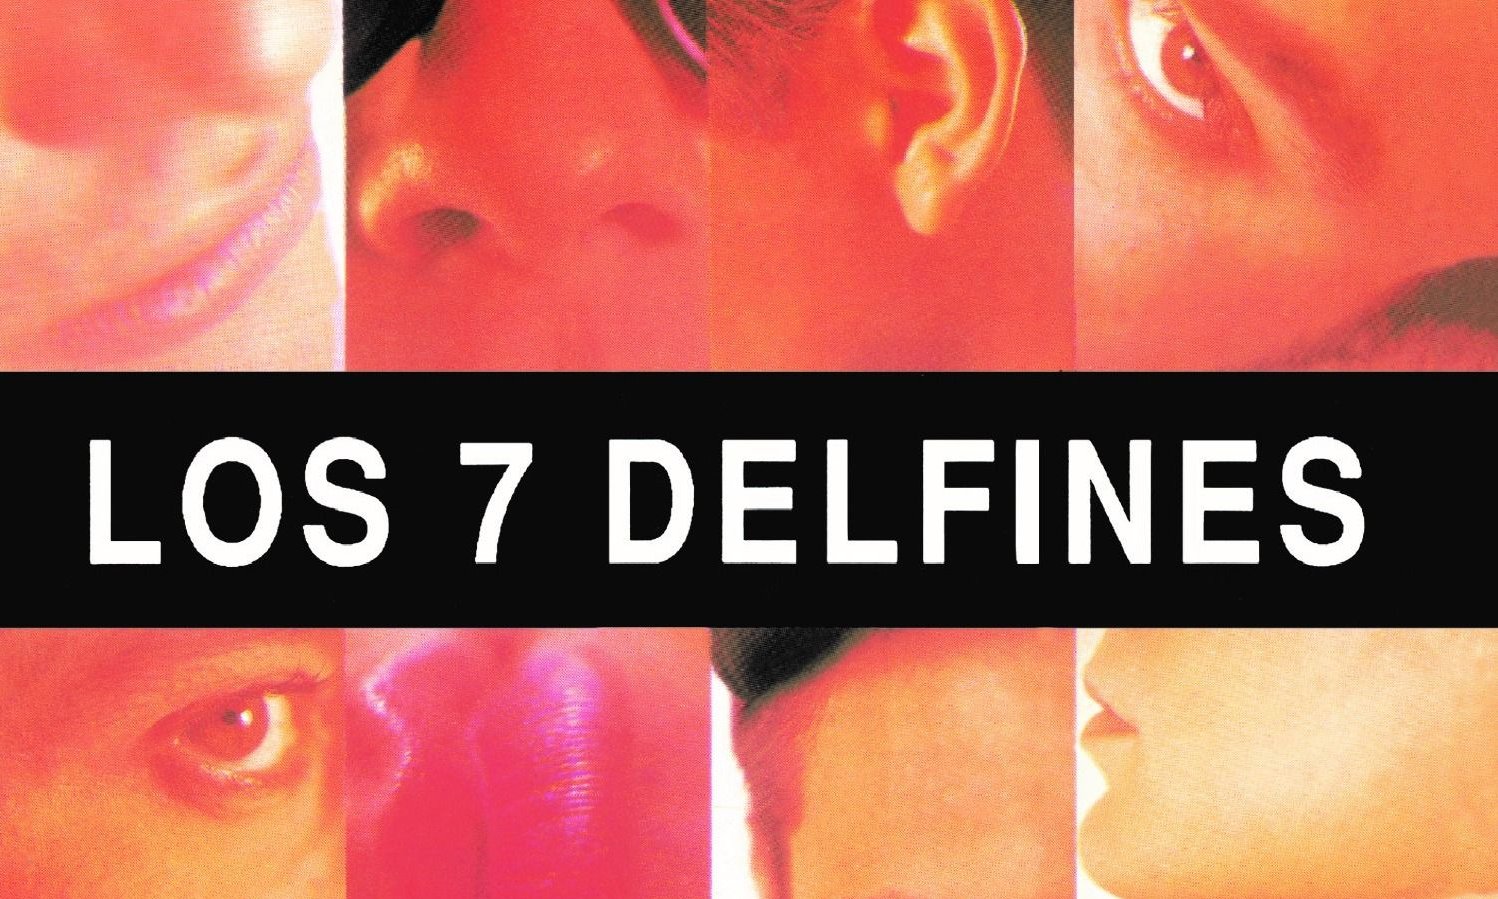 Los 7 Delfines lanzaron su nuevo vinilo "L7D"